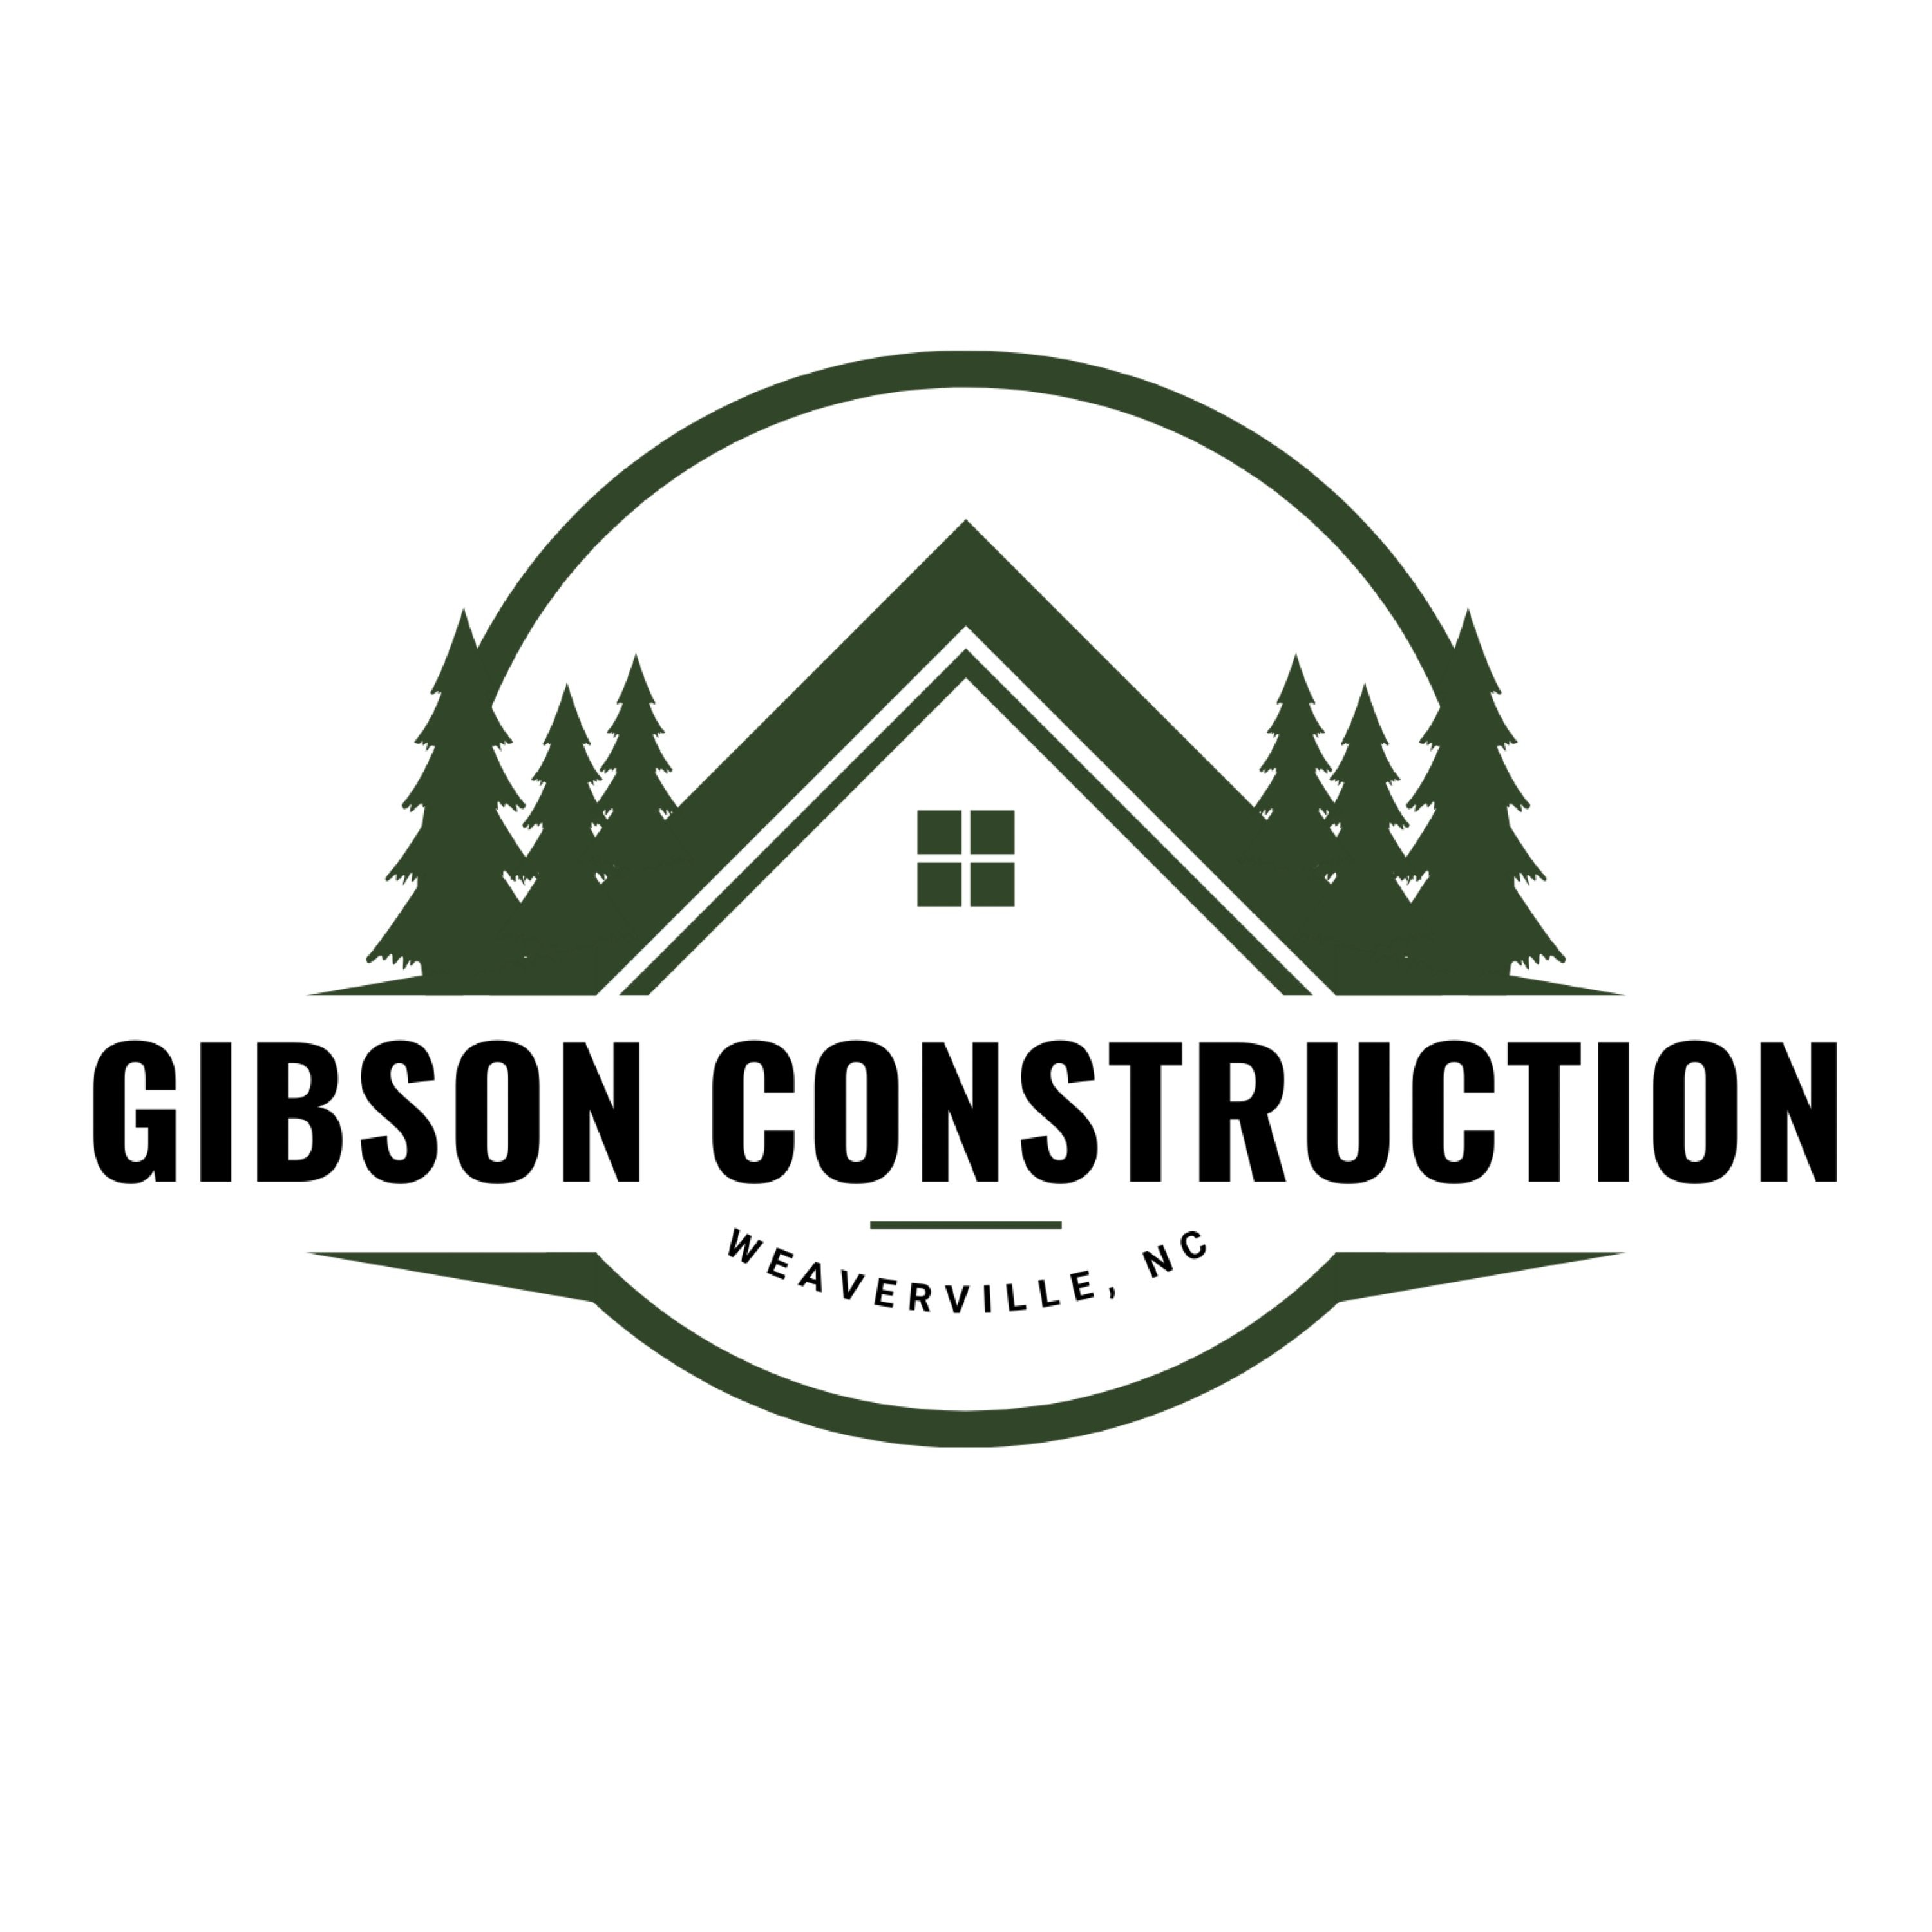 Gibson Construction Services NC Logo